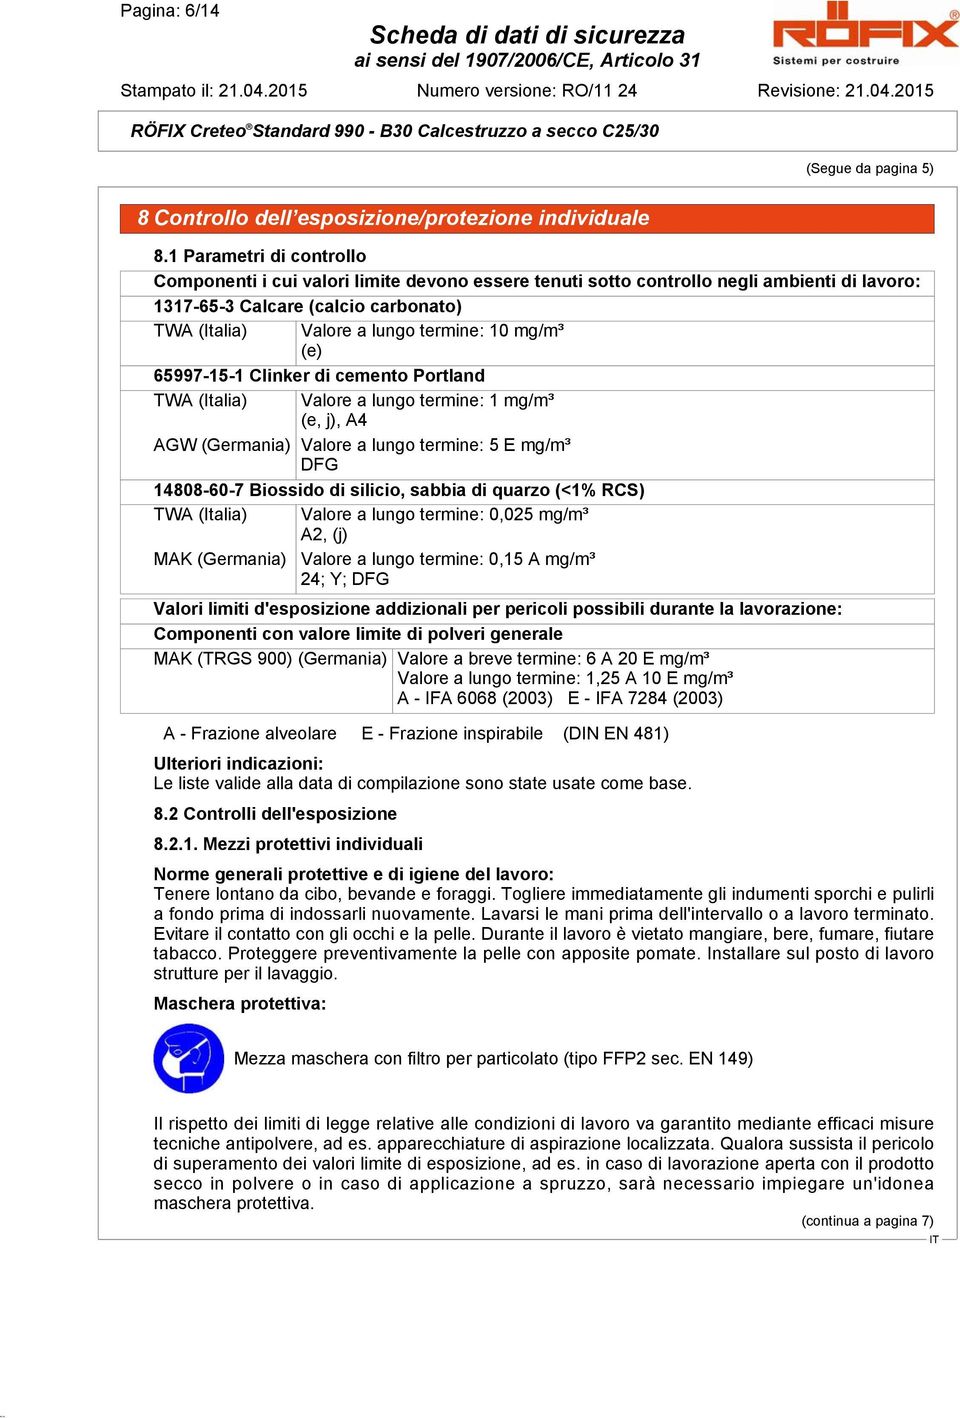 mg/m³ (e) 65997-15-1 Clinker di cemento Portland TWA (Italia) Valore a lungo termine: 1 mg/m³ (e, j), A4 AGW (Germania) Valore a lungo termine: 5 E mg/m³ DFG 14808-60-7 Biossido di silicio, sabbia di